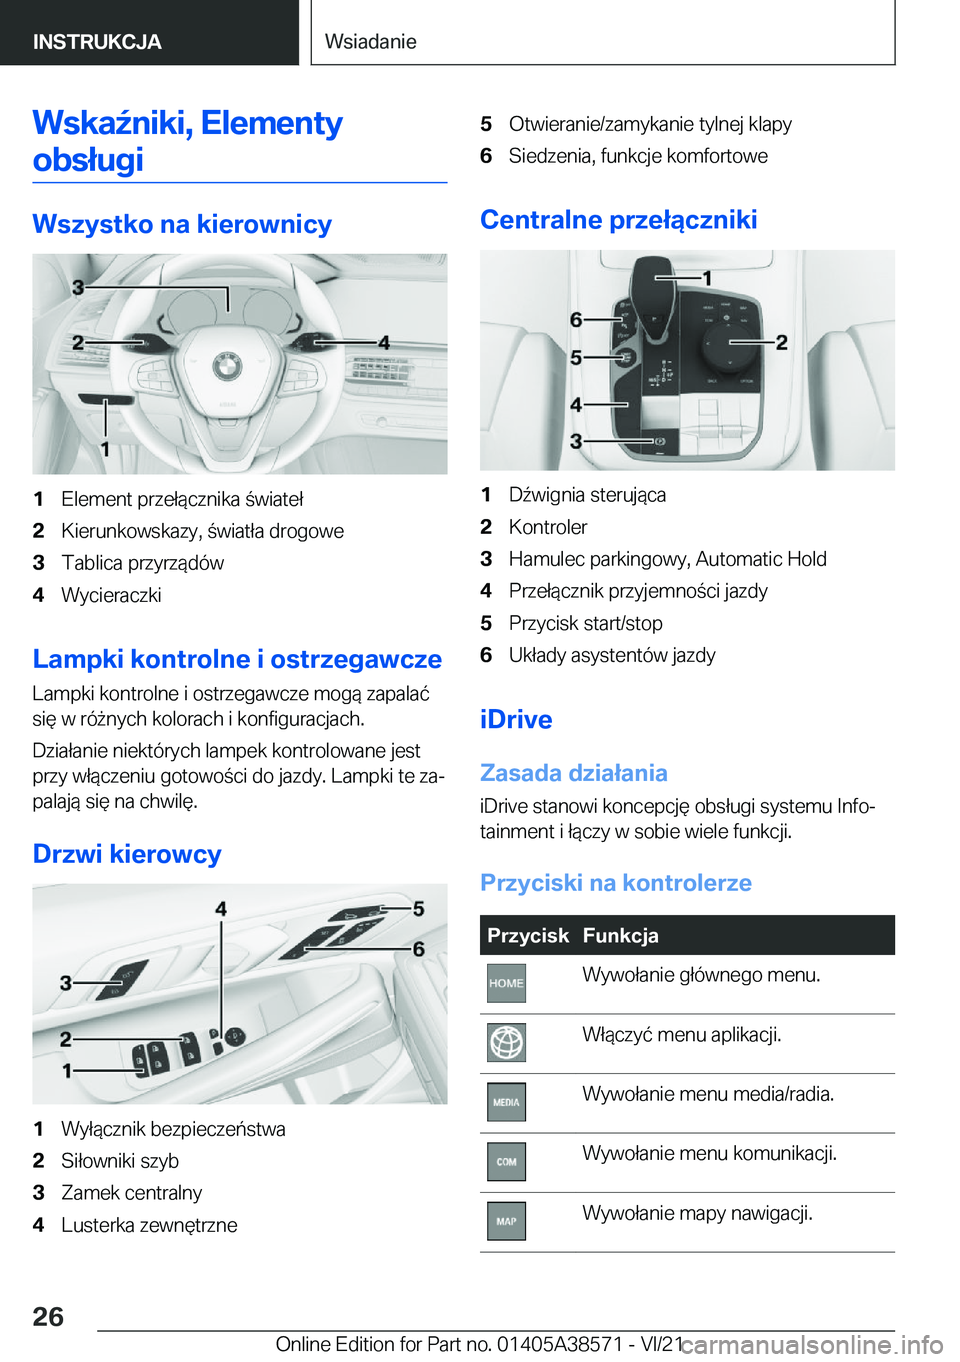 BMW X6 2022  Instrukcja obsługi (in Polish) �W�s�k�a7�n�i�k�i�,��E�l�e�m�e�n�t�y�o�b�s�ł�u�g�i
�W�s�z�y�s�t�k�o��n�a��k�i�e�r�o�w�n�i�c�y
�1�E�l�e�m�e�n�t��p�r�z�e�ł�